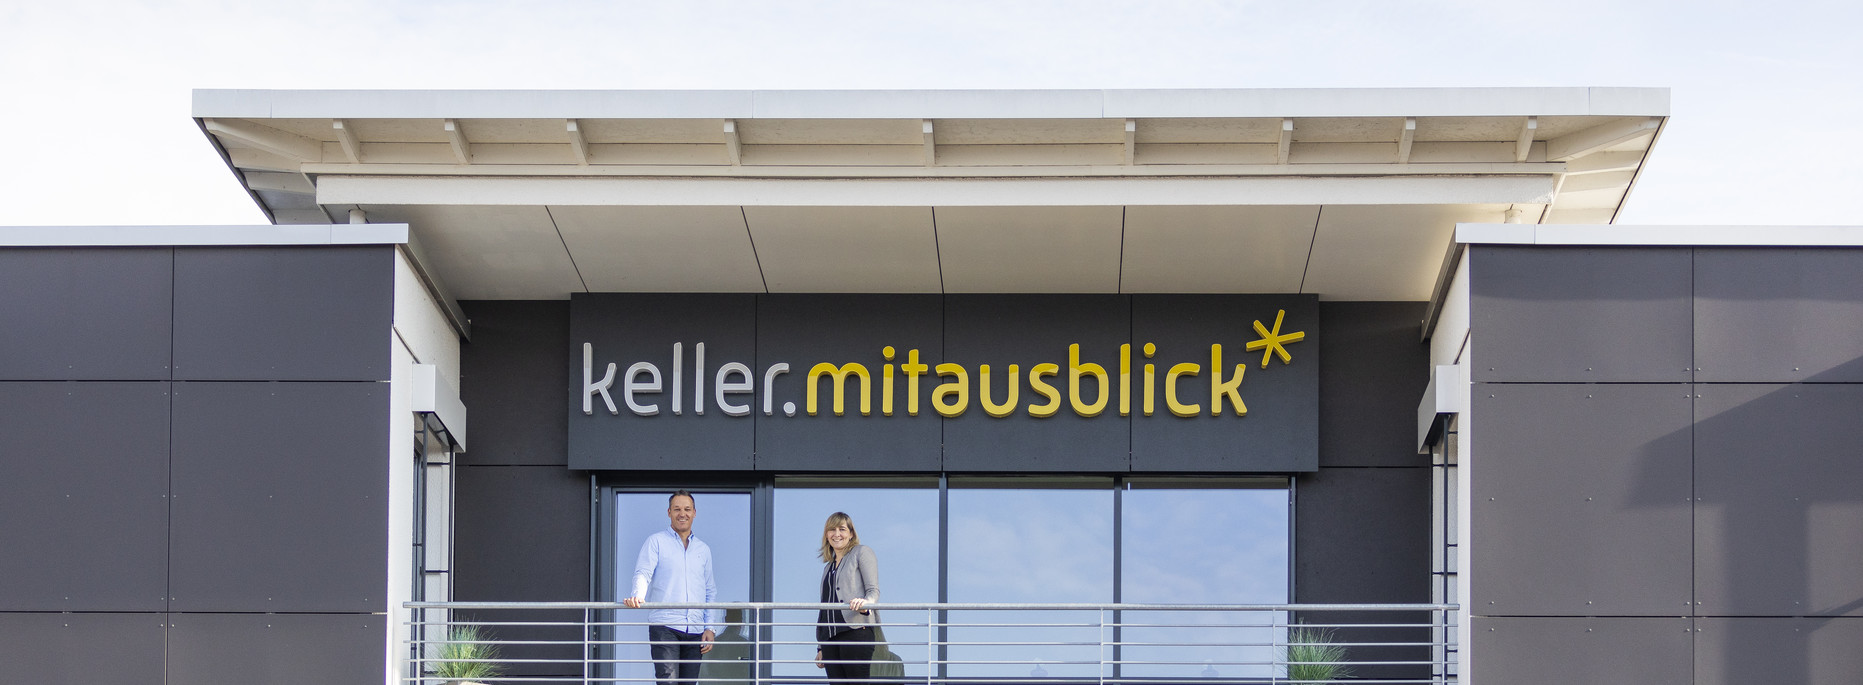 MdB Nina Warken und Michael Keller | keller.mitausblick News